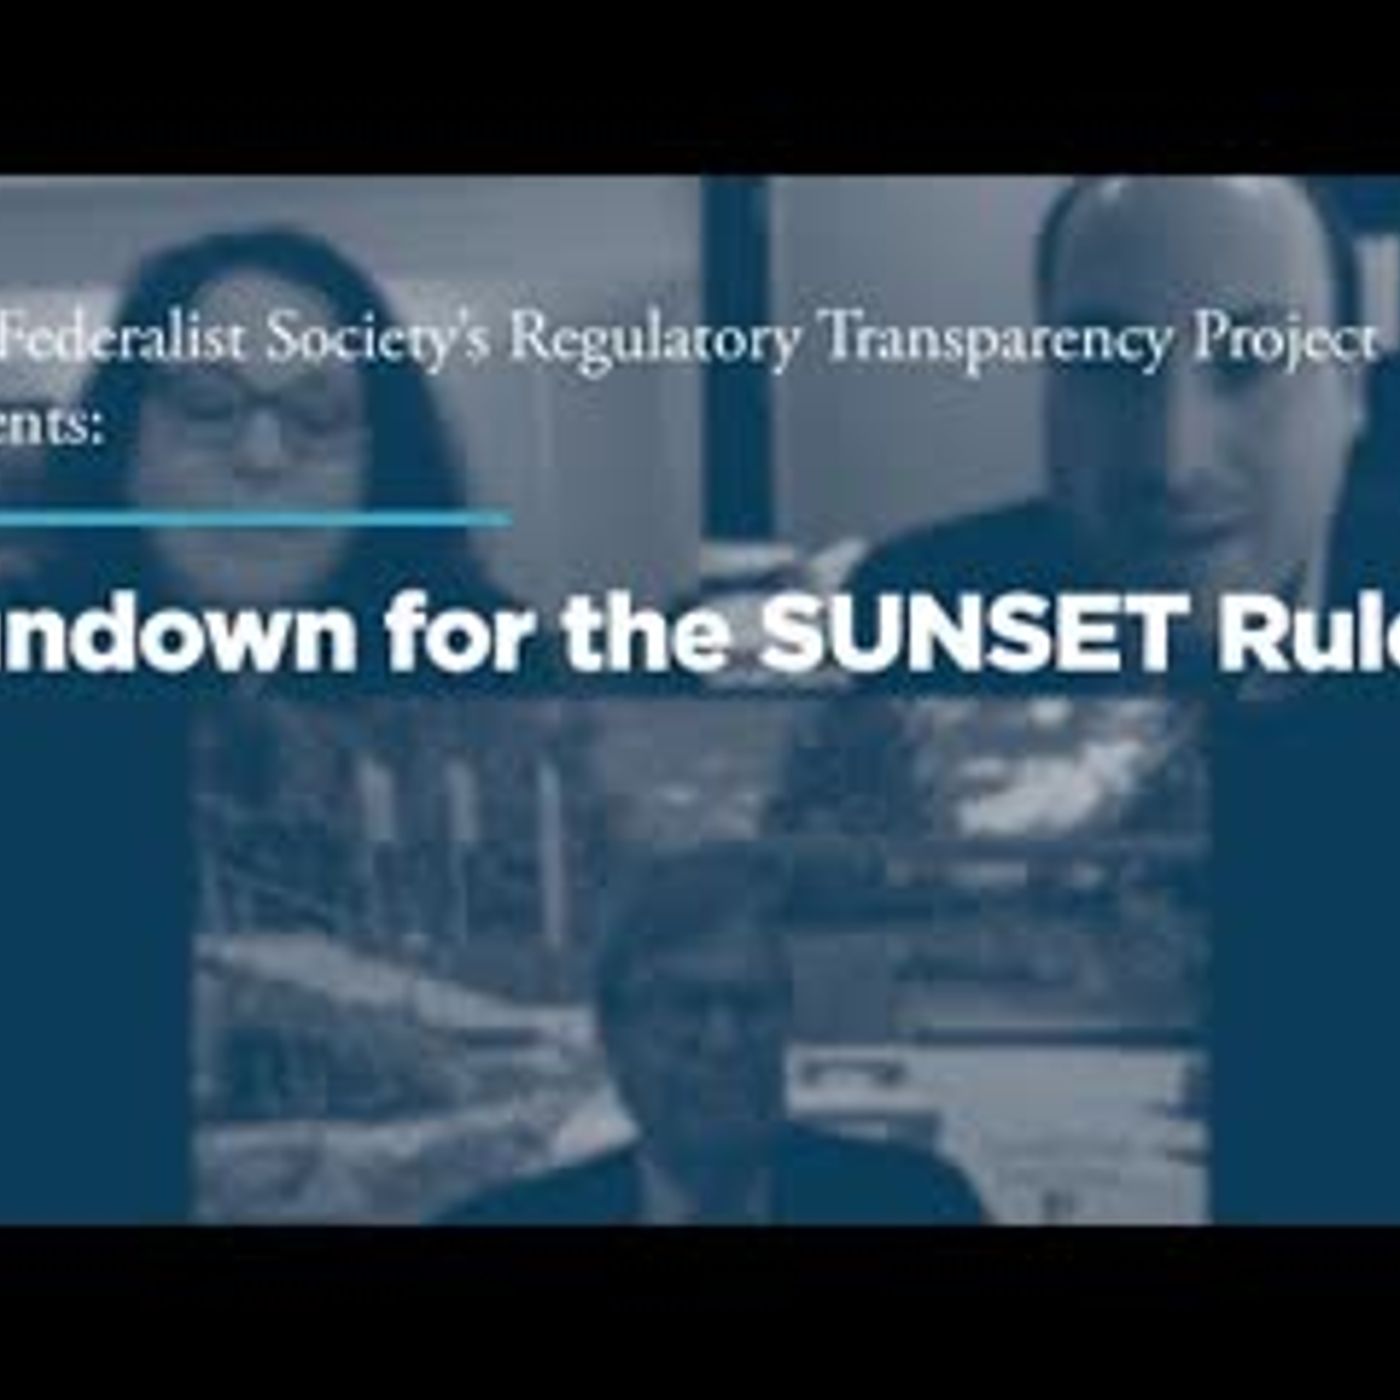 Sundown for the SUNSET Rule?